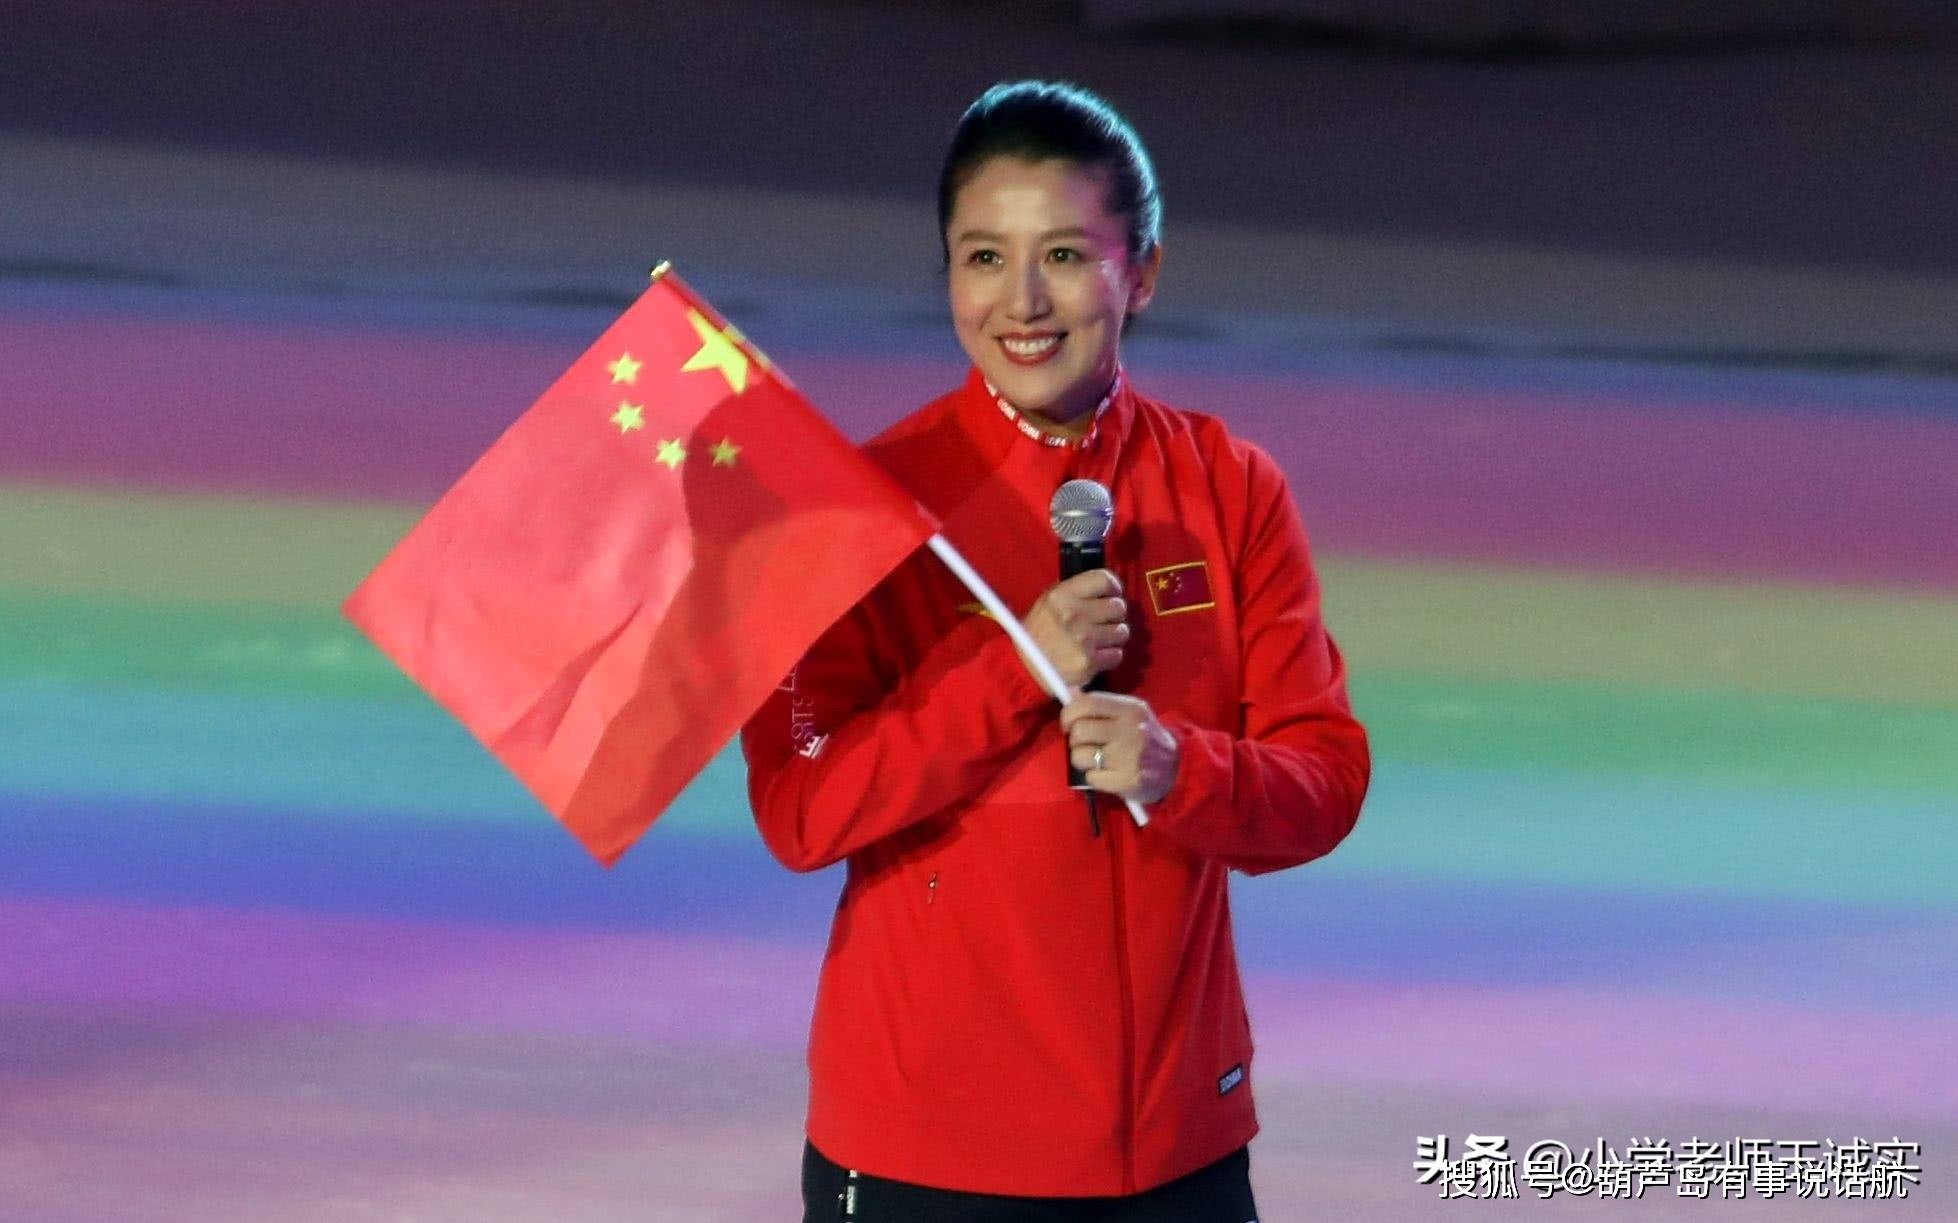 杨扬,1975年8月24日出生于黑龙江省佳木斯市汤原县,世界冠军,奥运冠军